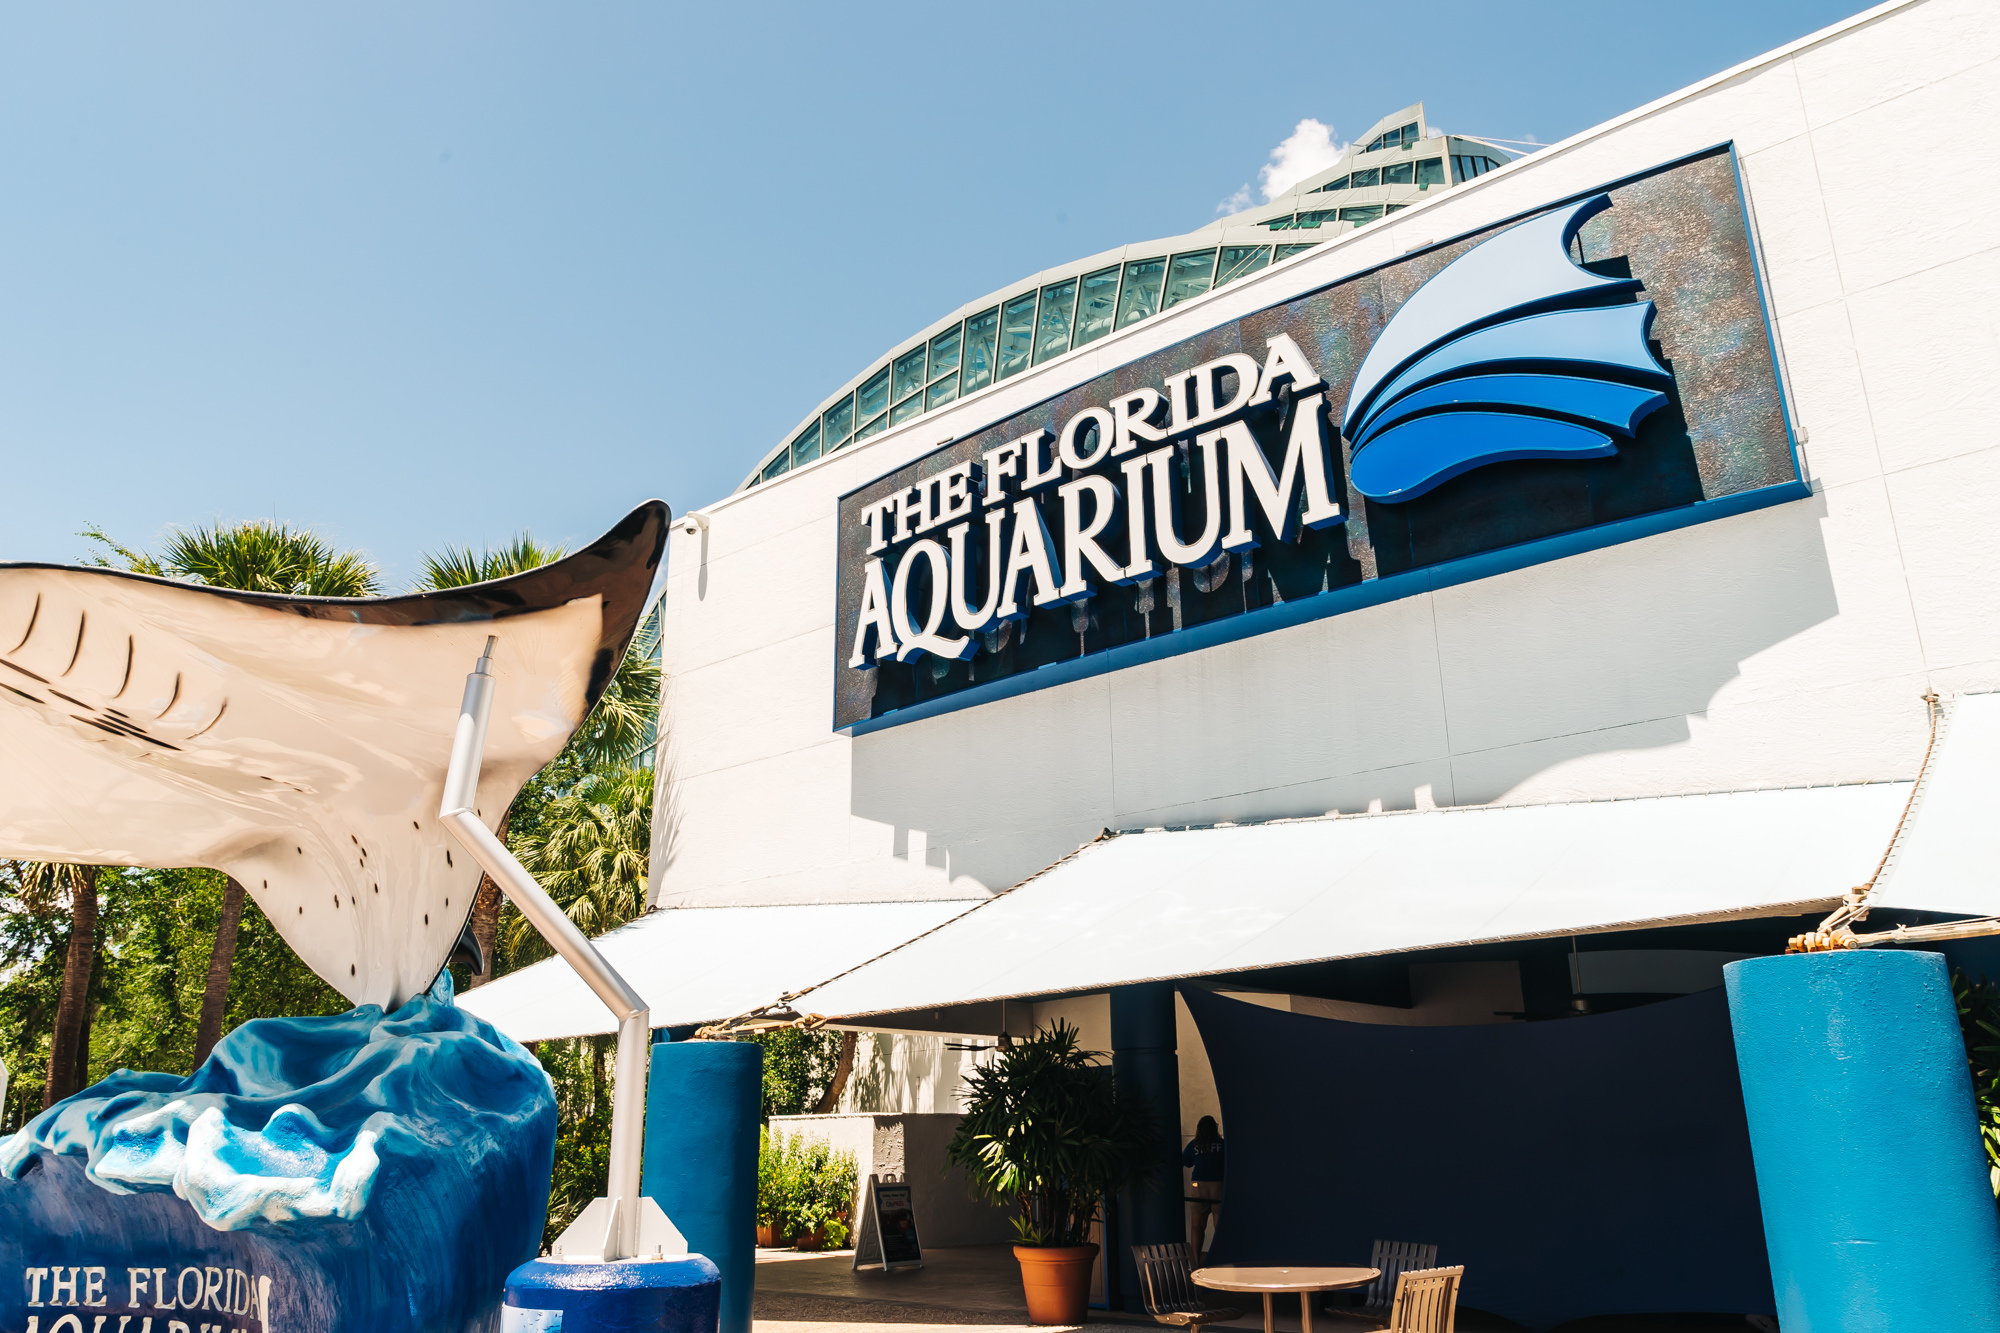 Meet the Cutest Penguins at The Florida Aquarium in Tampa - Travel